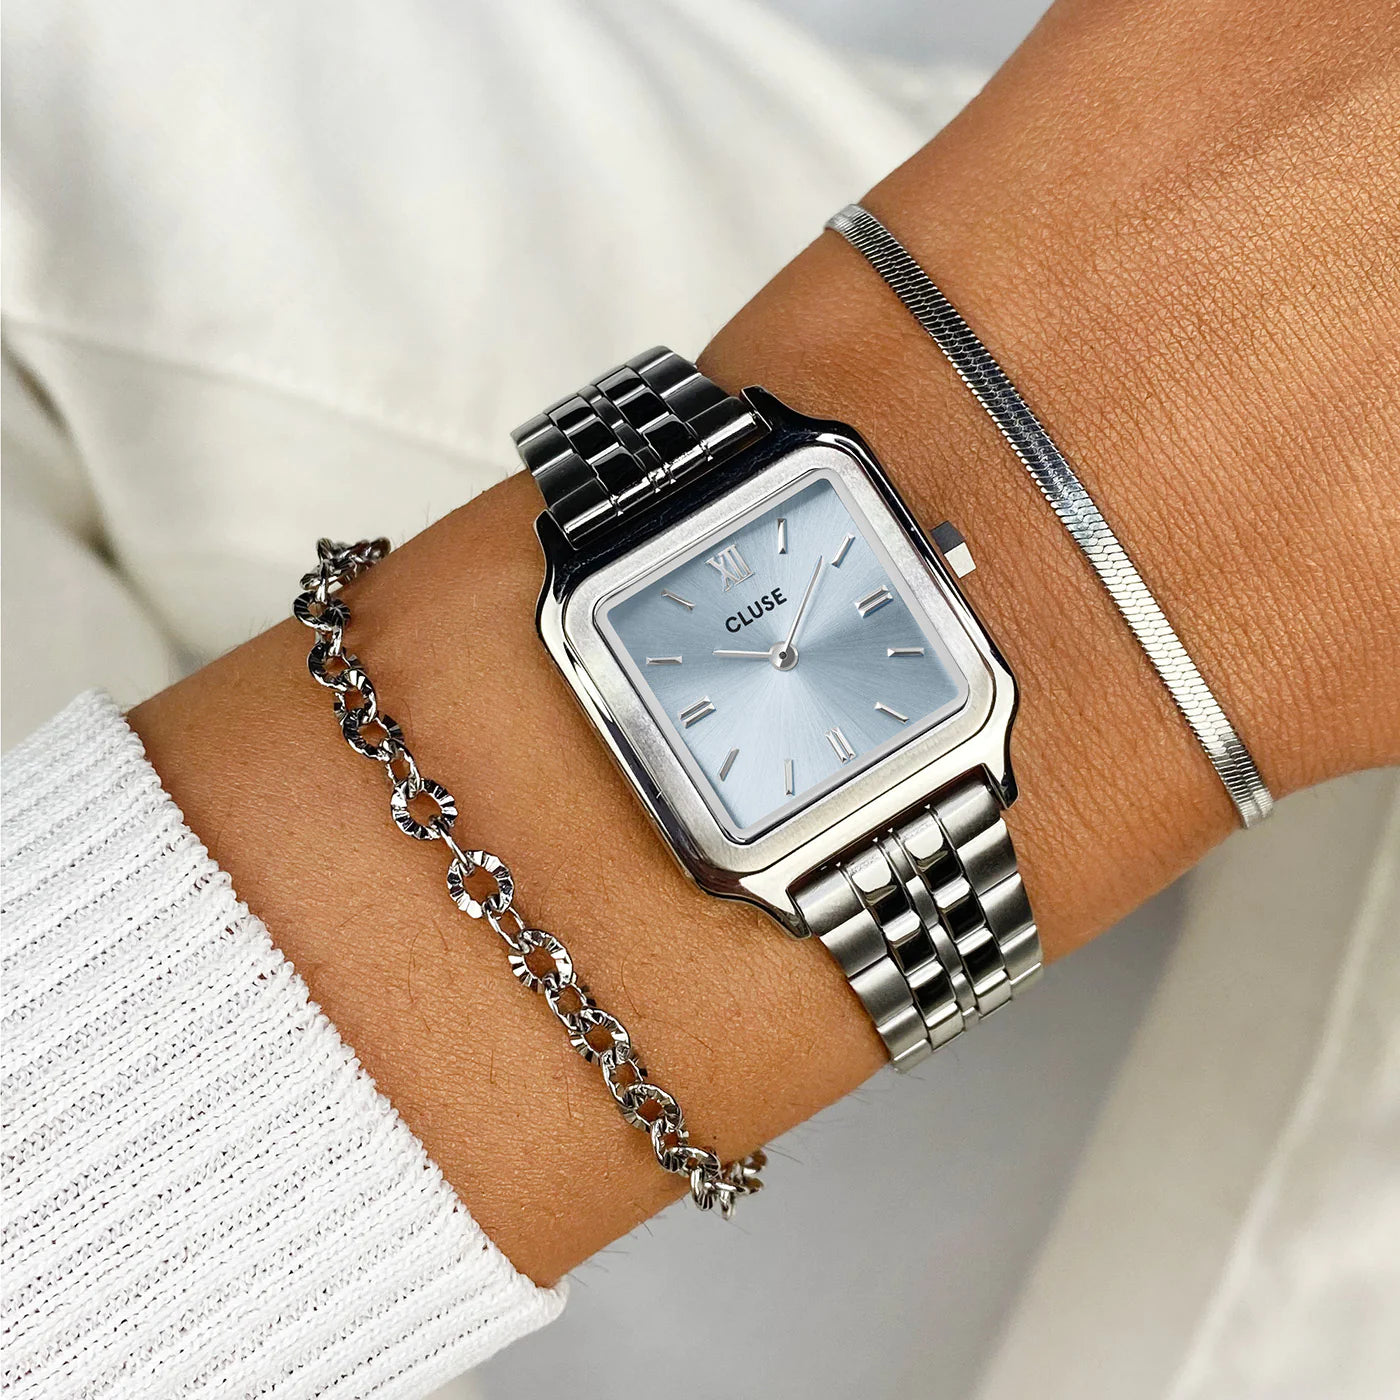 Frau trägt die Cluse Stahl-Uhr "Gracieuse Petite" mit silberfarbenem Gehäuse und eisblauem Zifferblatt an ihrem Handgelenk und kombiniert diese mit zwei silbernen Armbändern